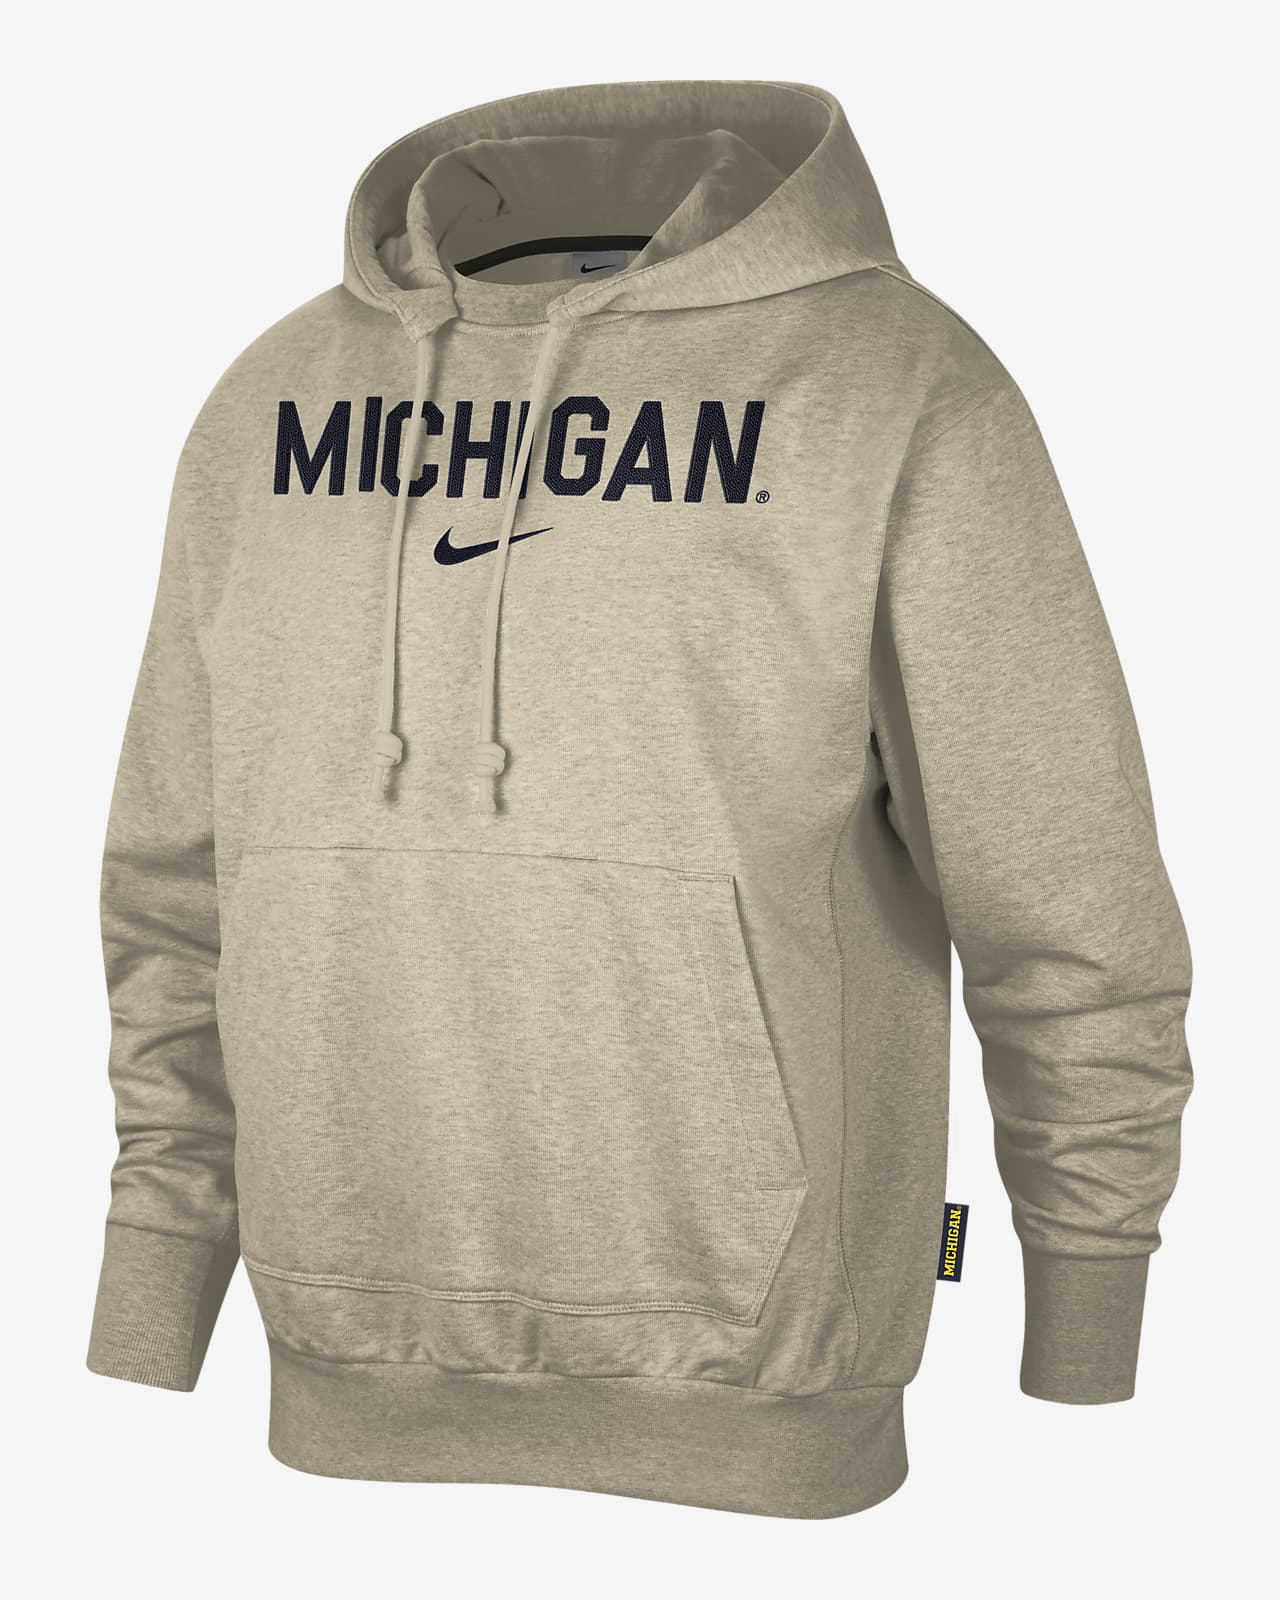 Salg Ynkelig Selskabelig Michigan Standard Issue Men's Nike College Pullover Hoodie. Nike.com